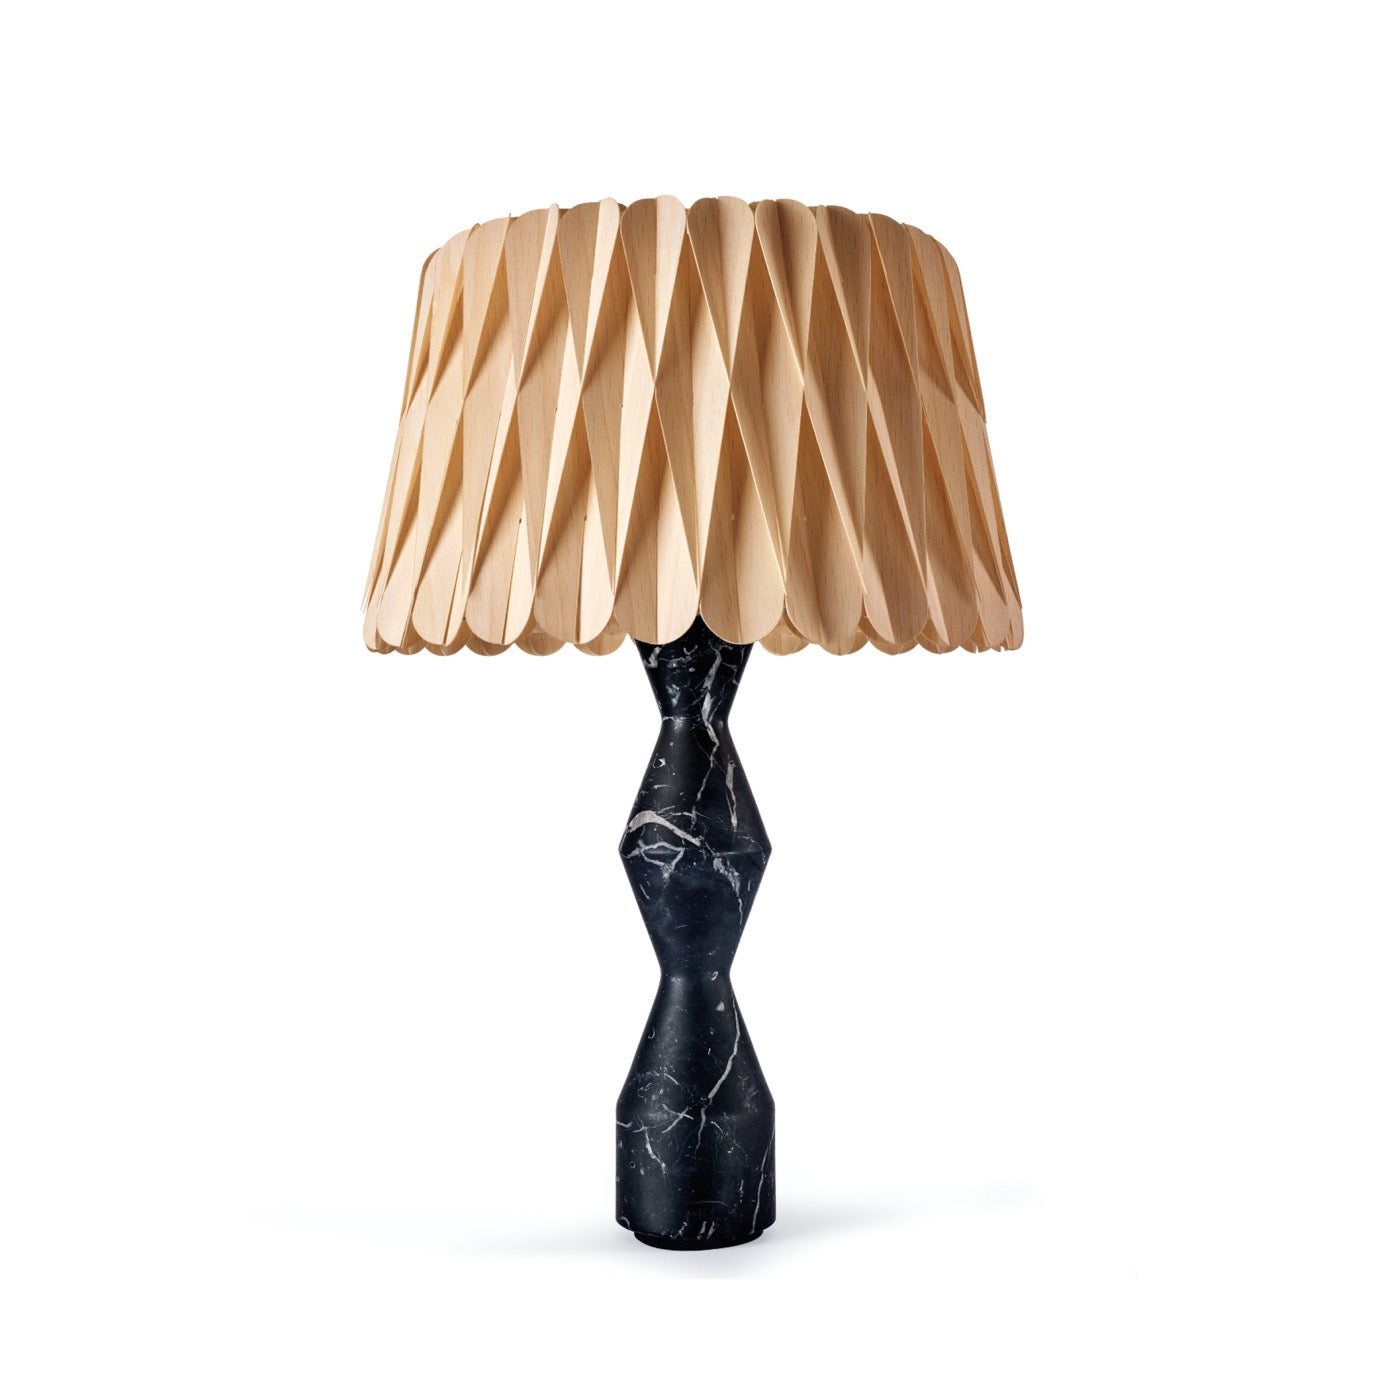 Lola Lux lamp